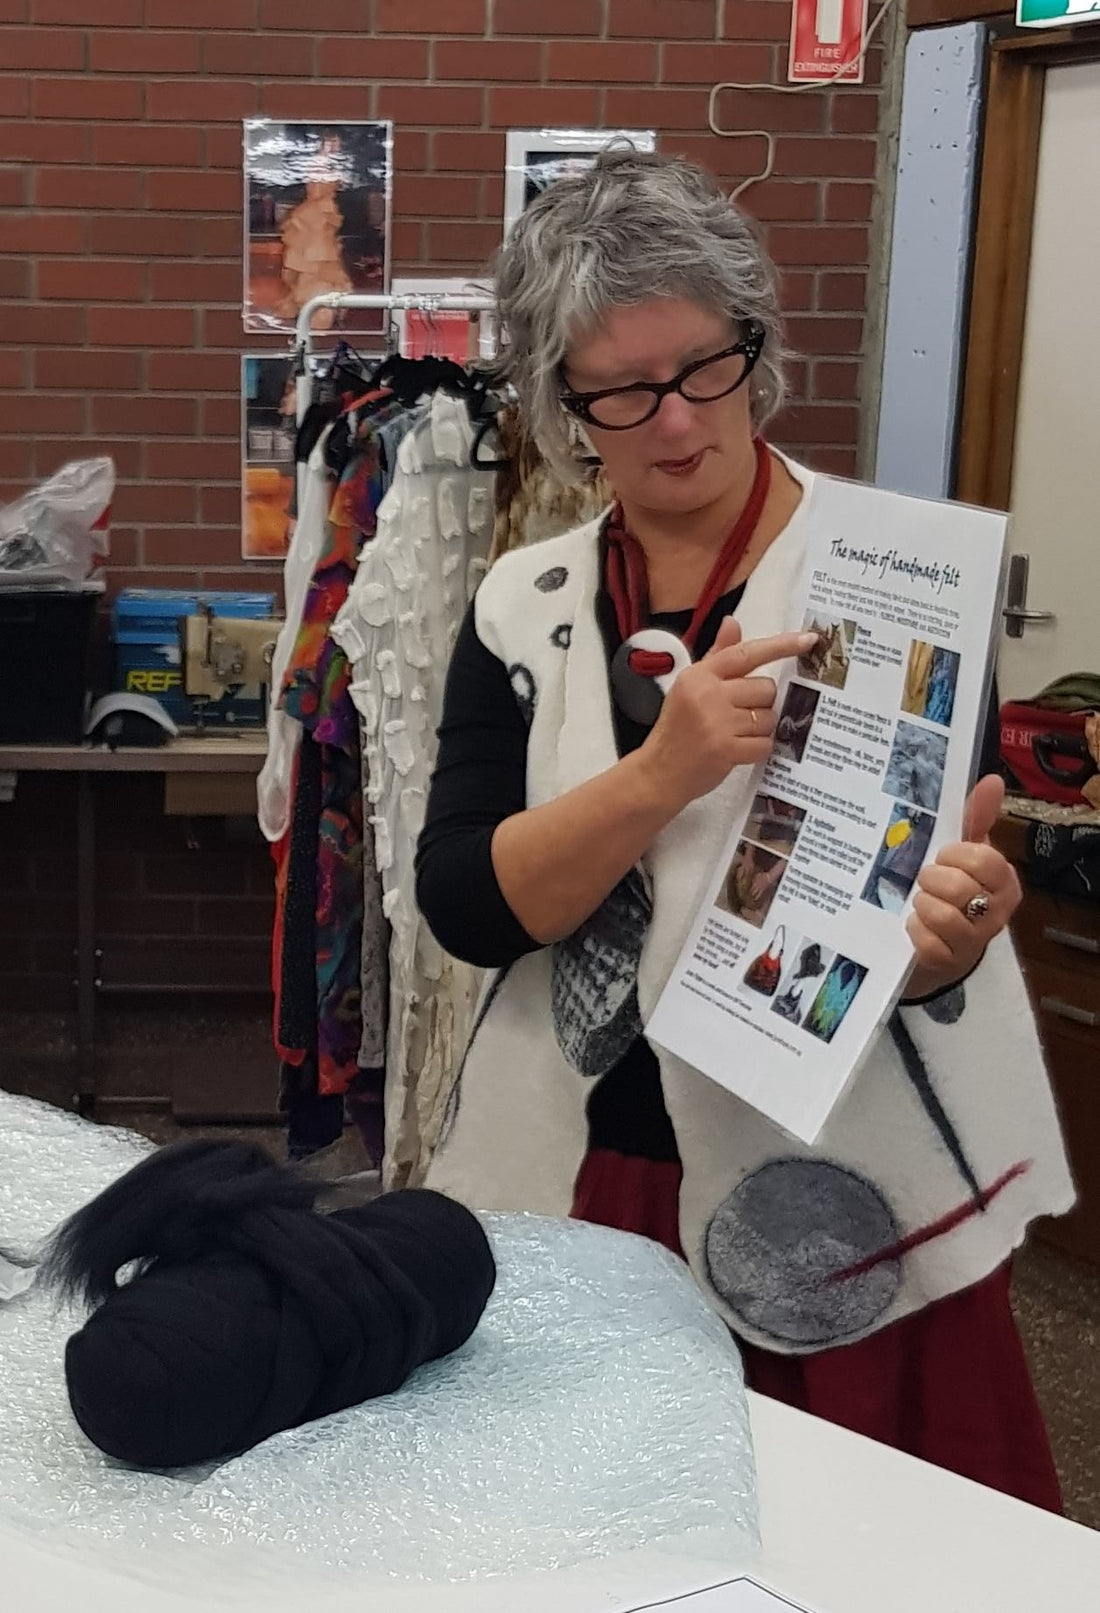 June Hope textile artist explaining felt making at a workshop